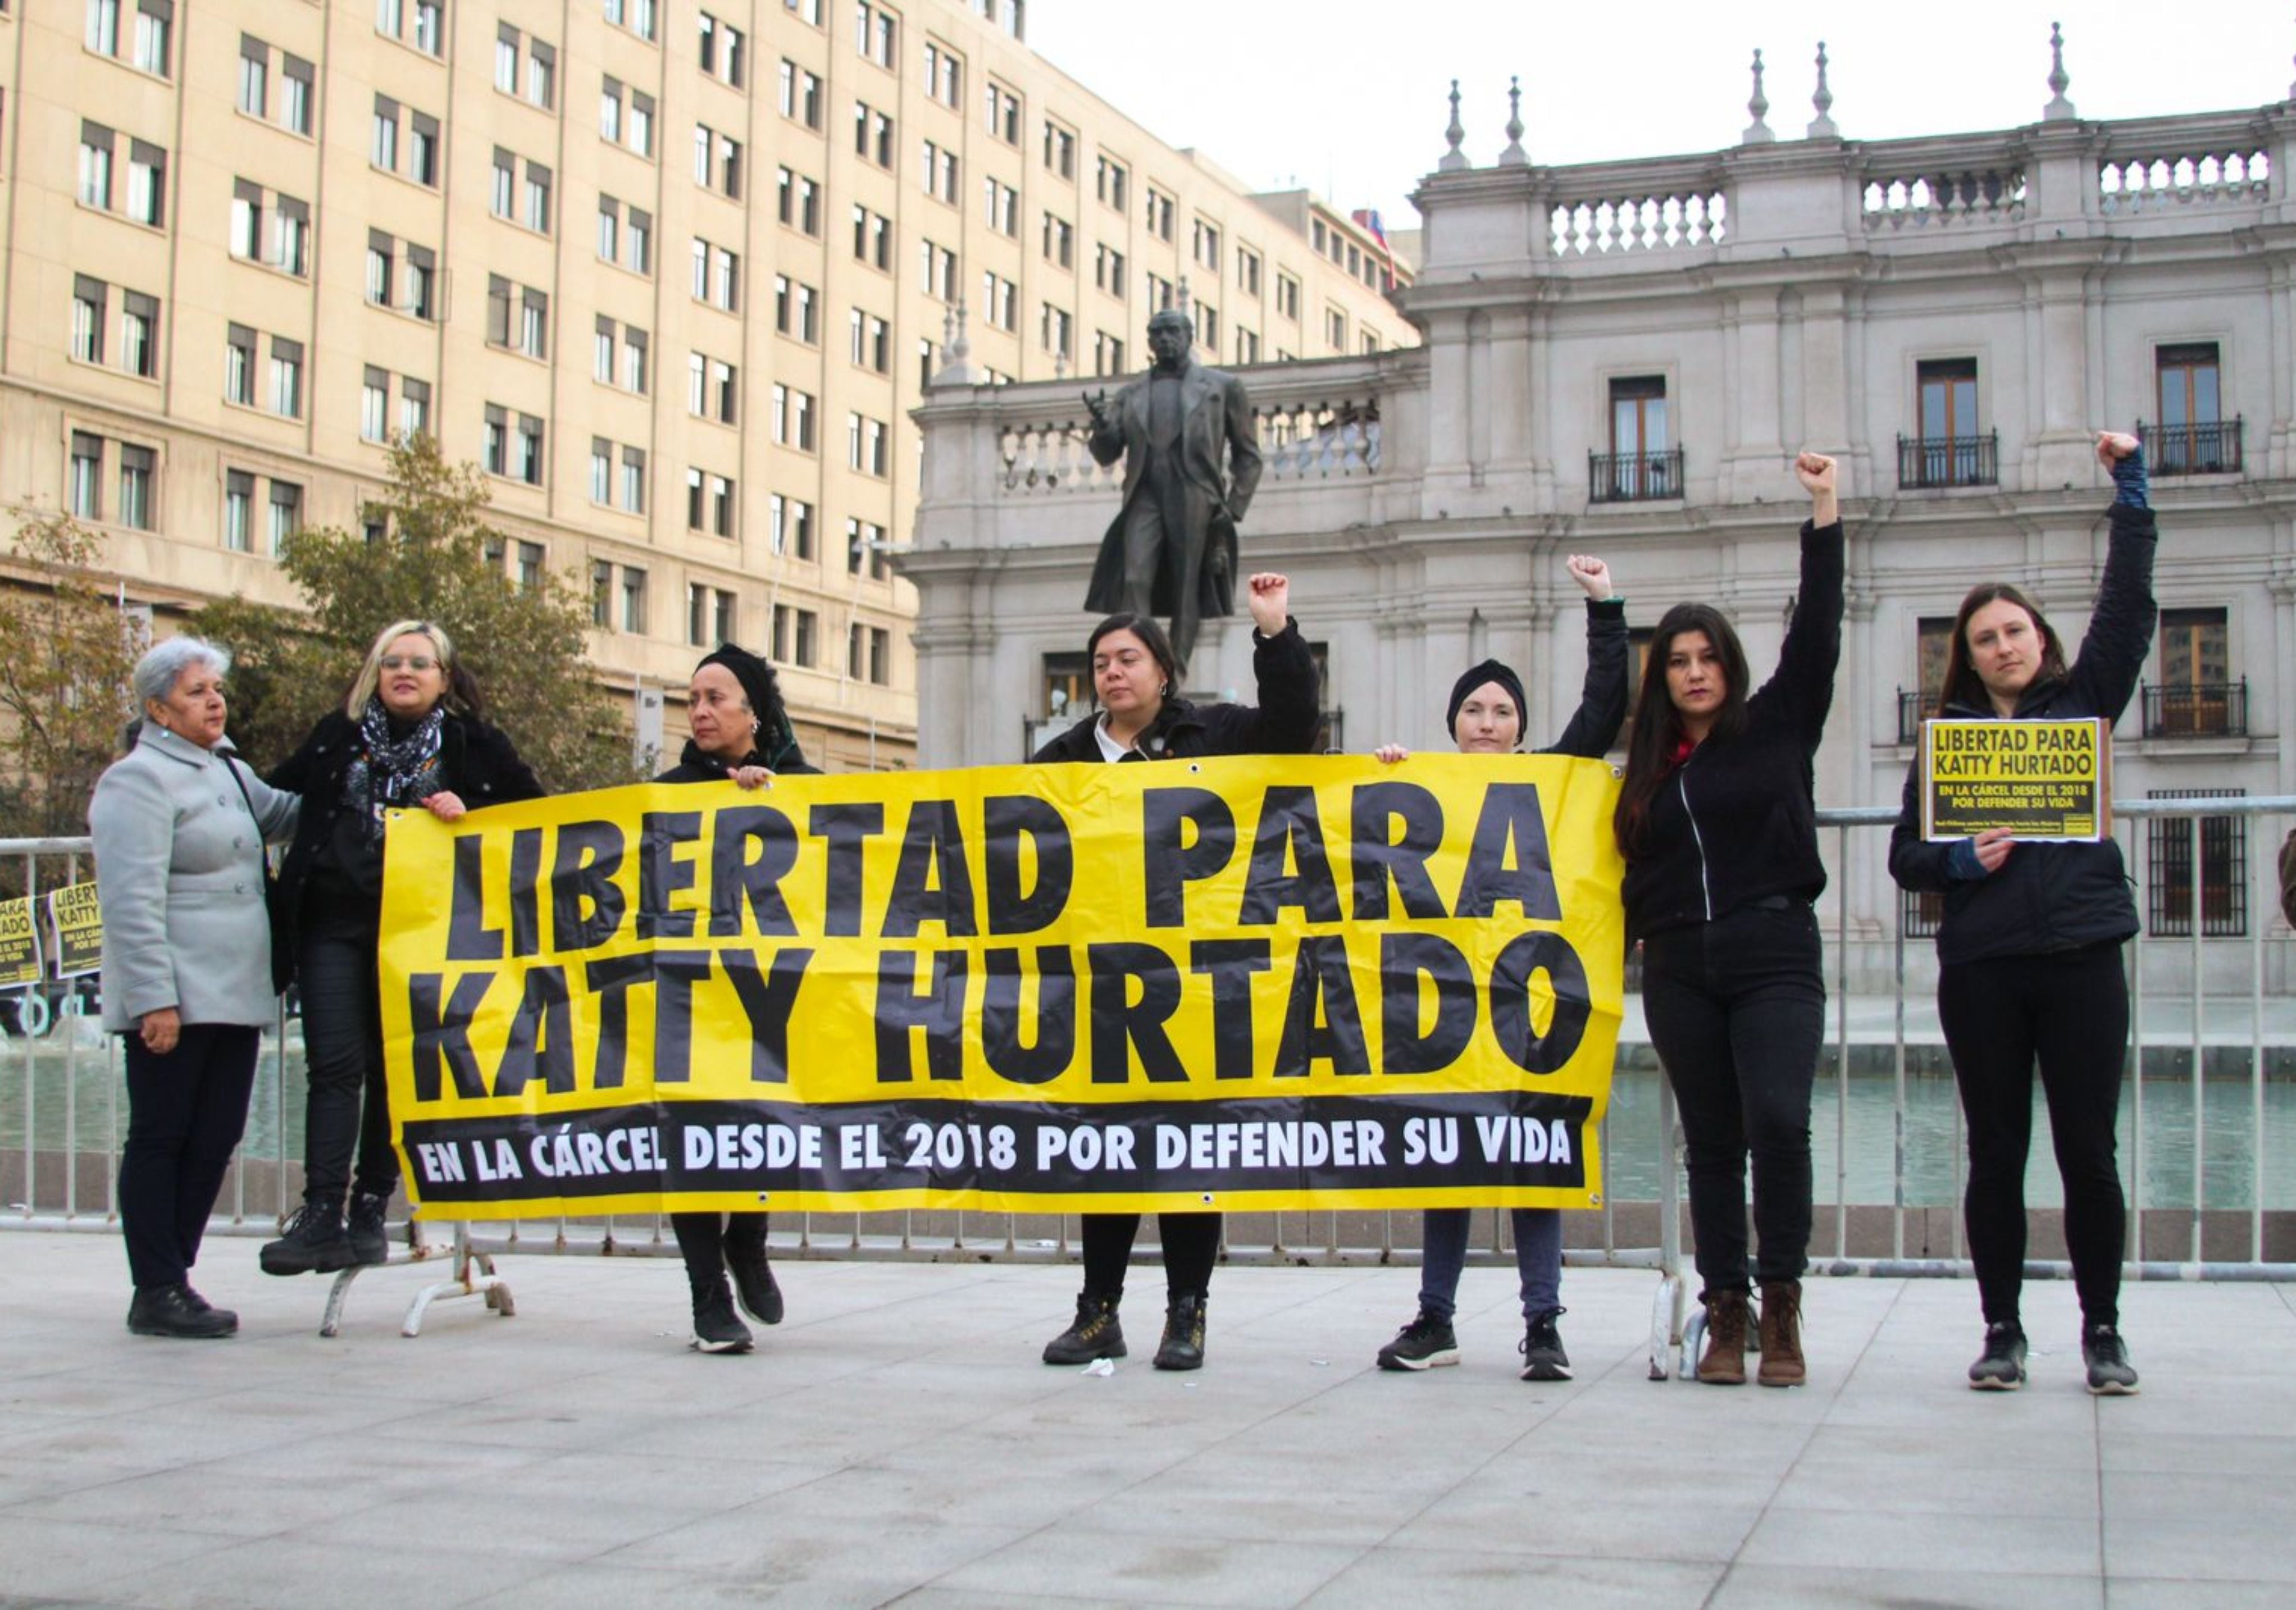 caso katty hurtado: gobierno confirma evaluación de indulto a mujer condenada por asesinato de su exesposo